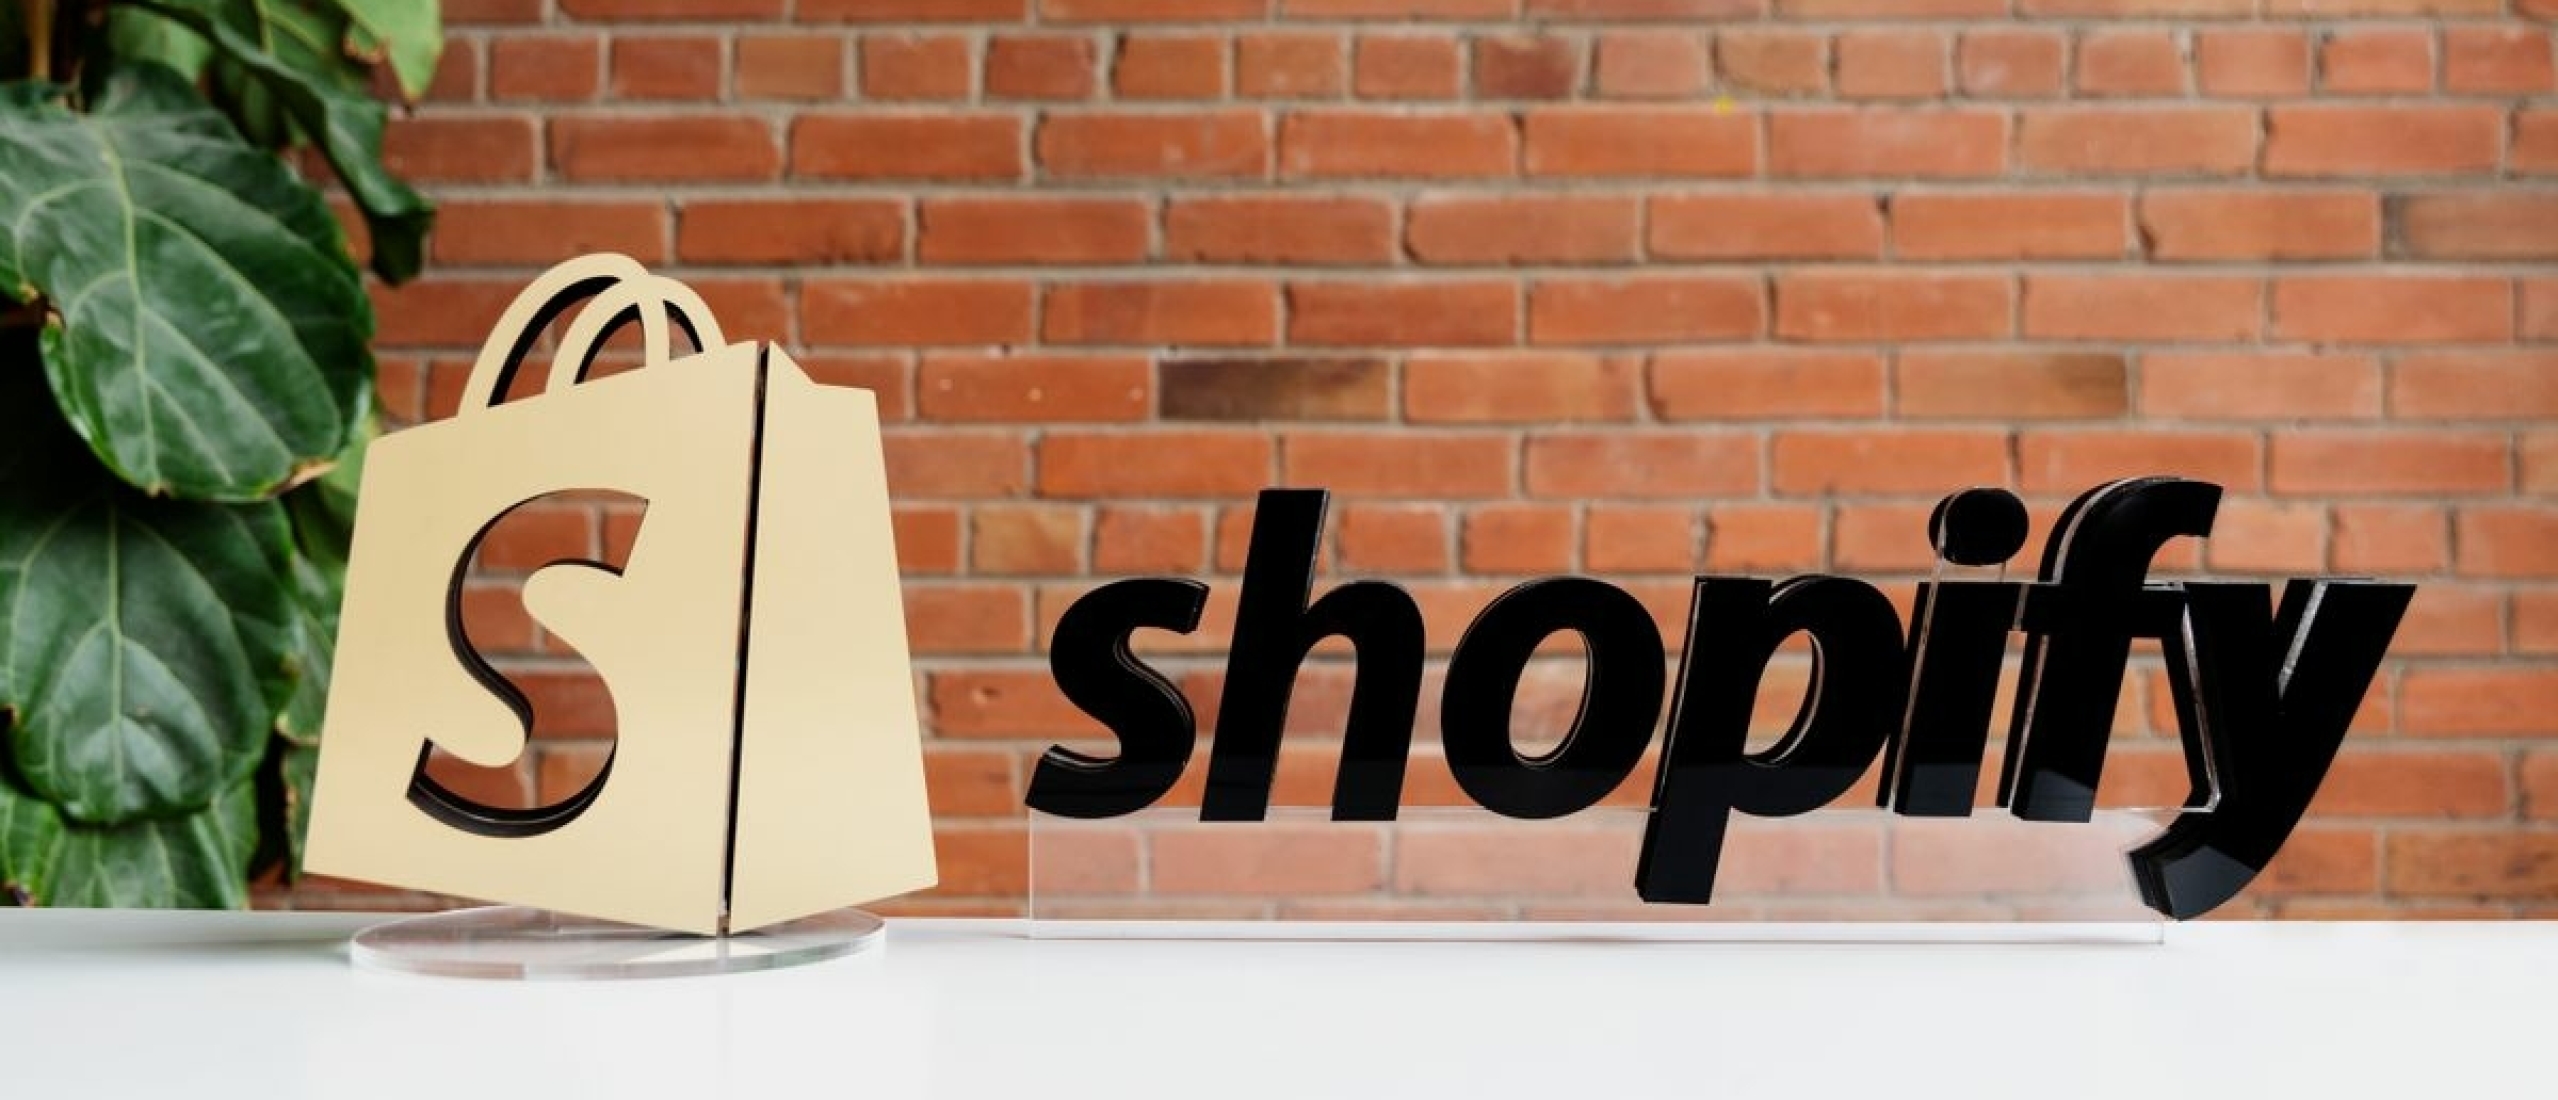 Shopify voegt samenwerkingstool toe om merken te verbinden met content creators